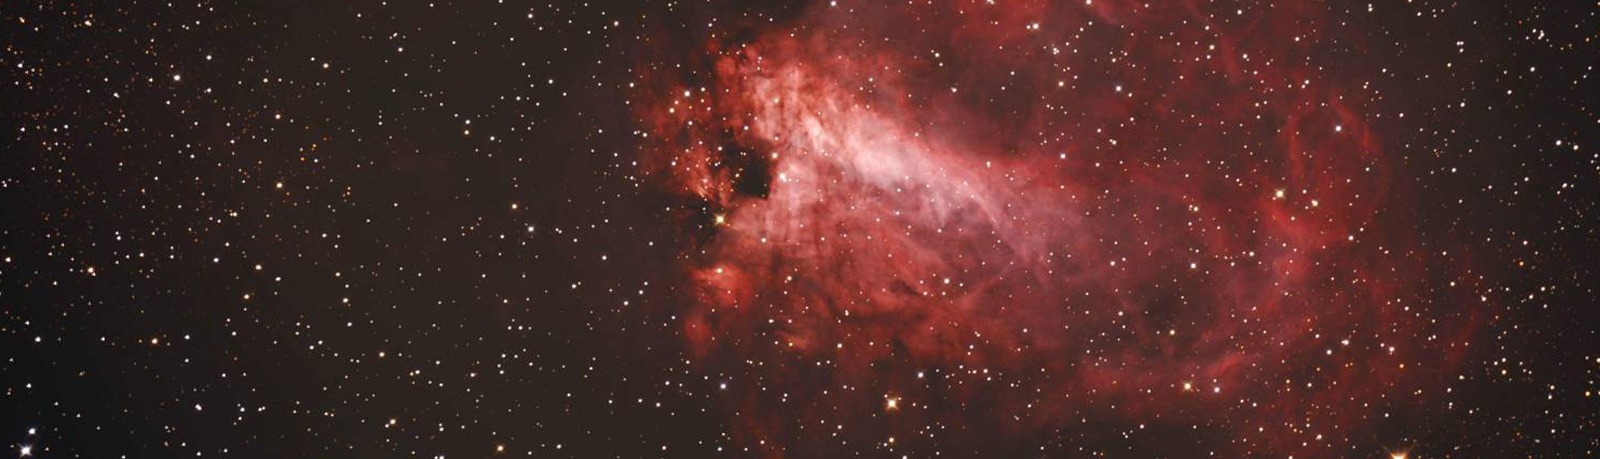 M17星雲